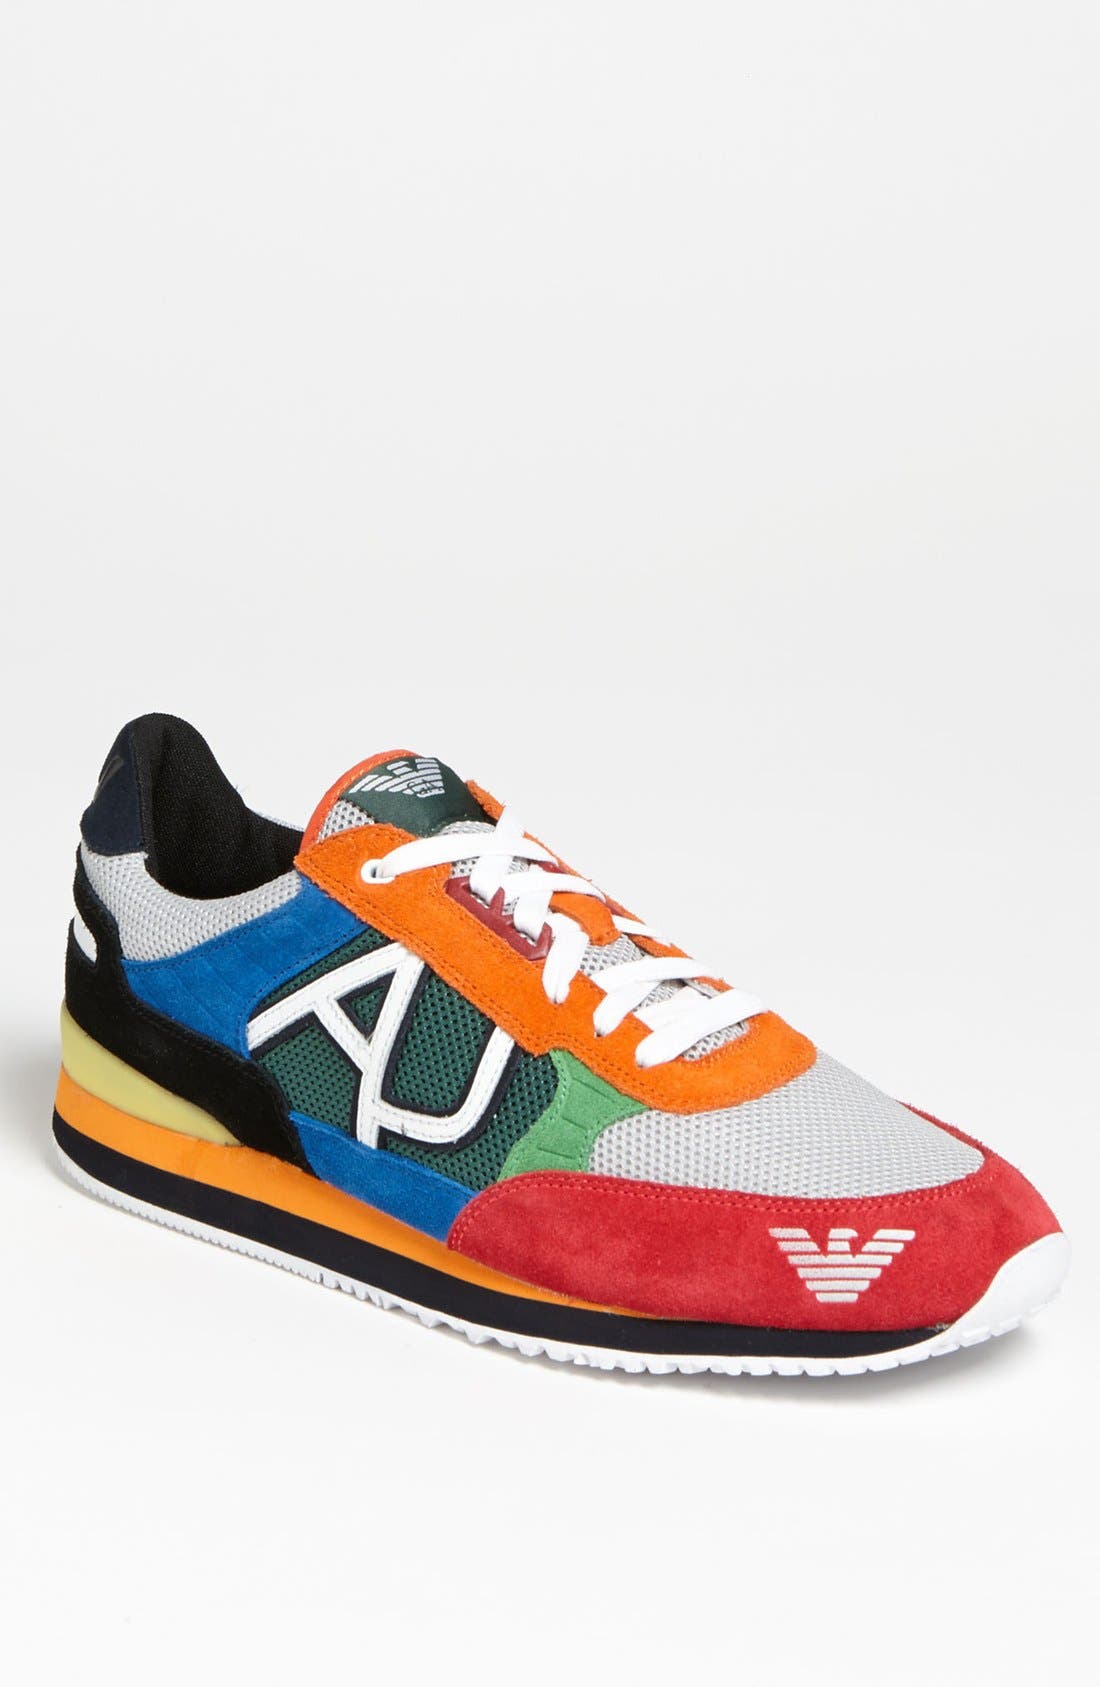 armani multicolor sneakers